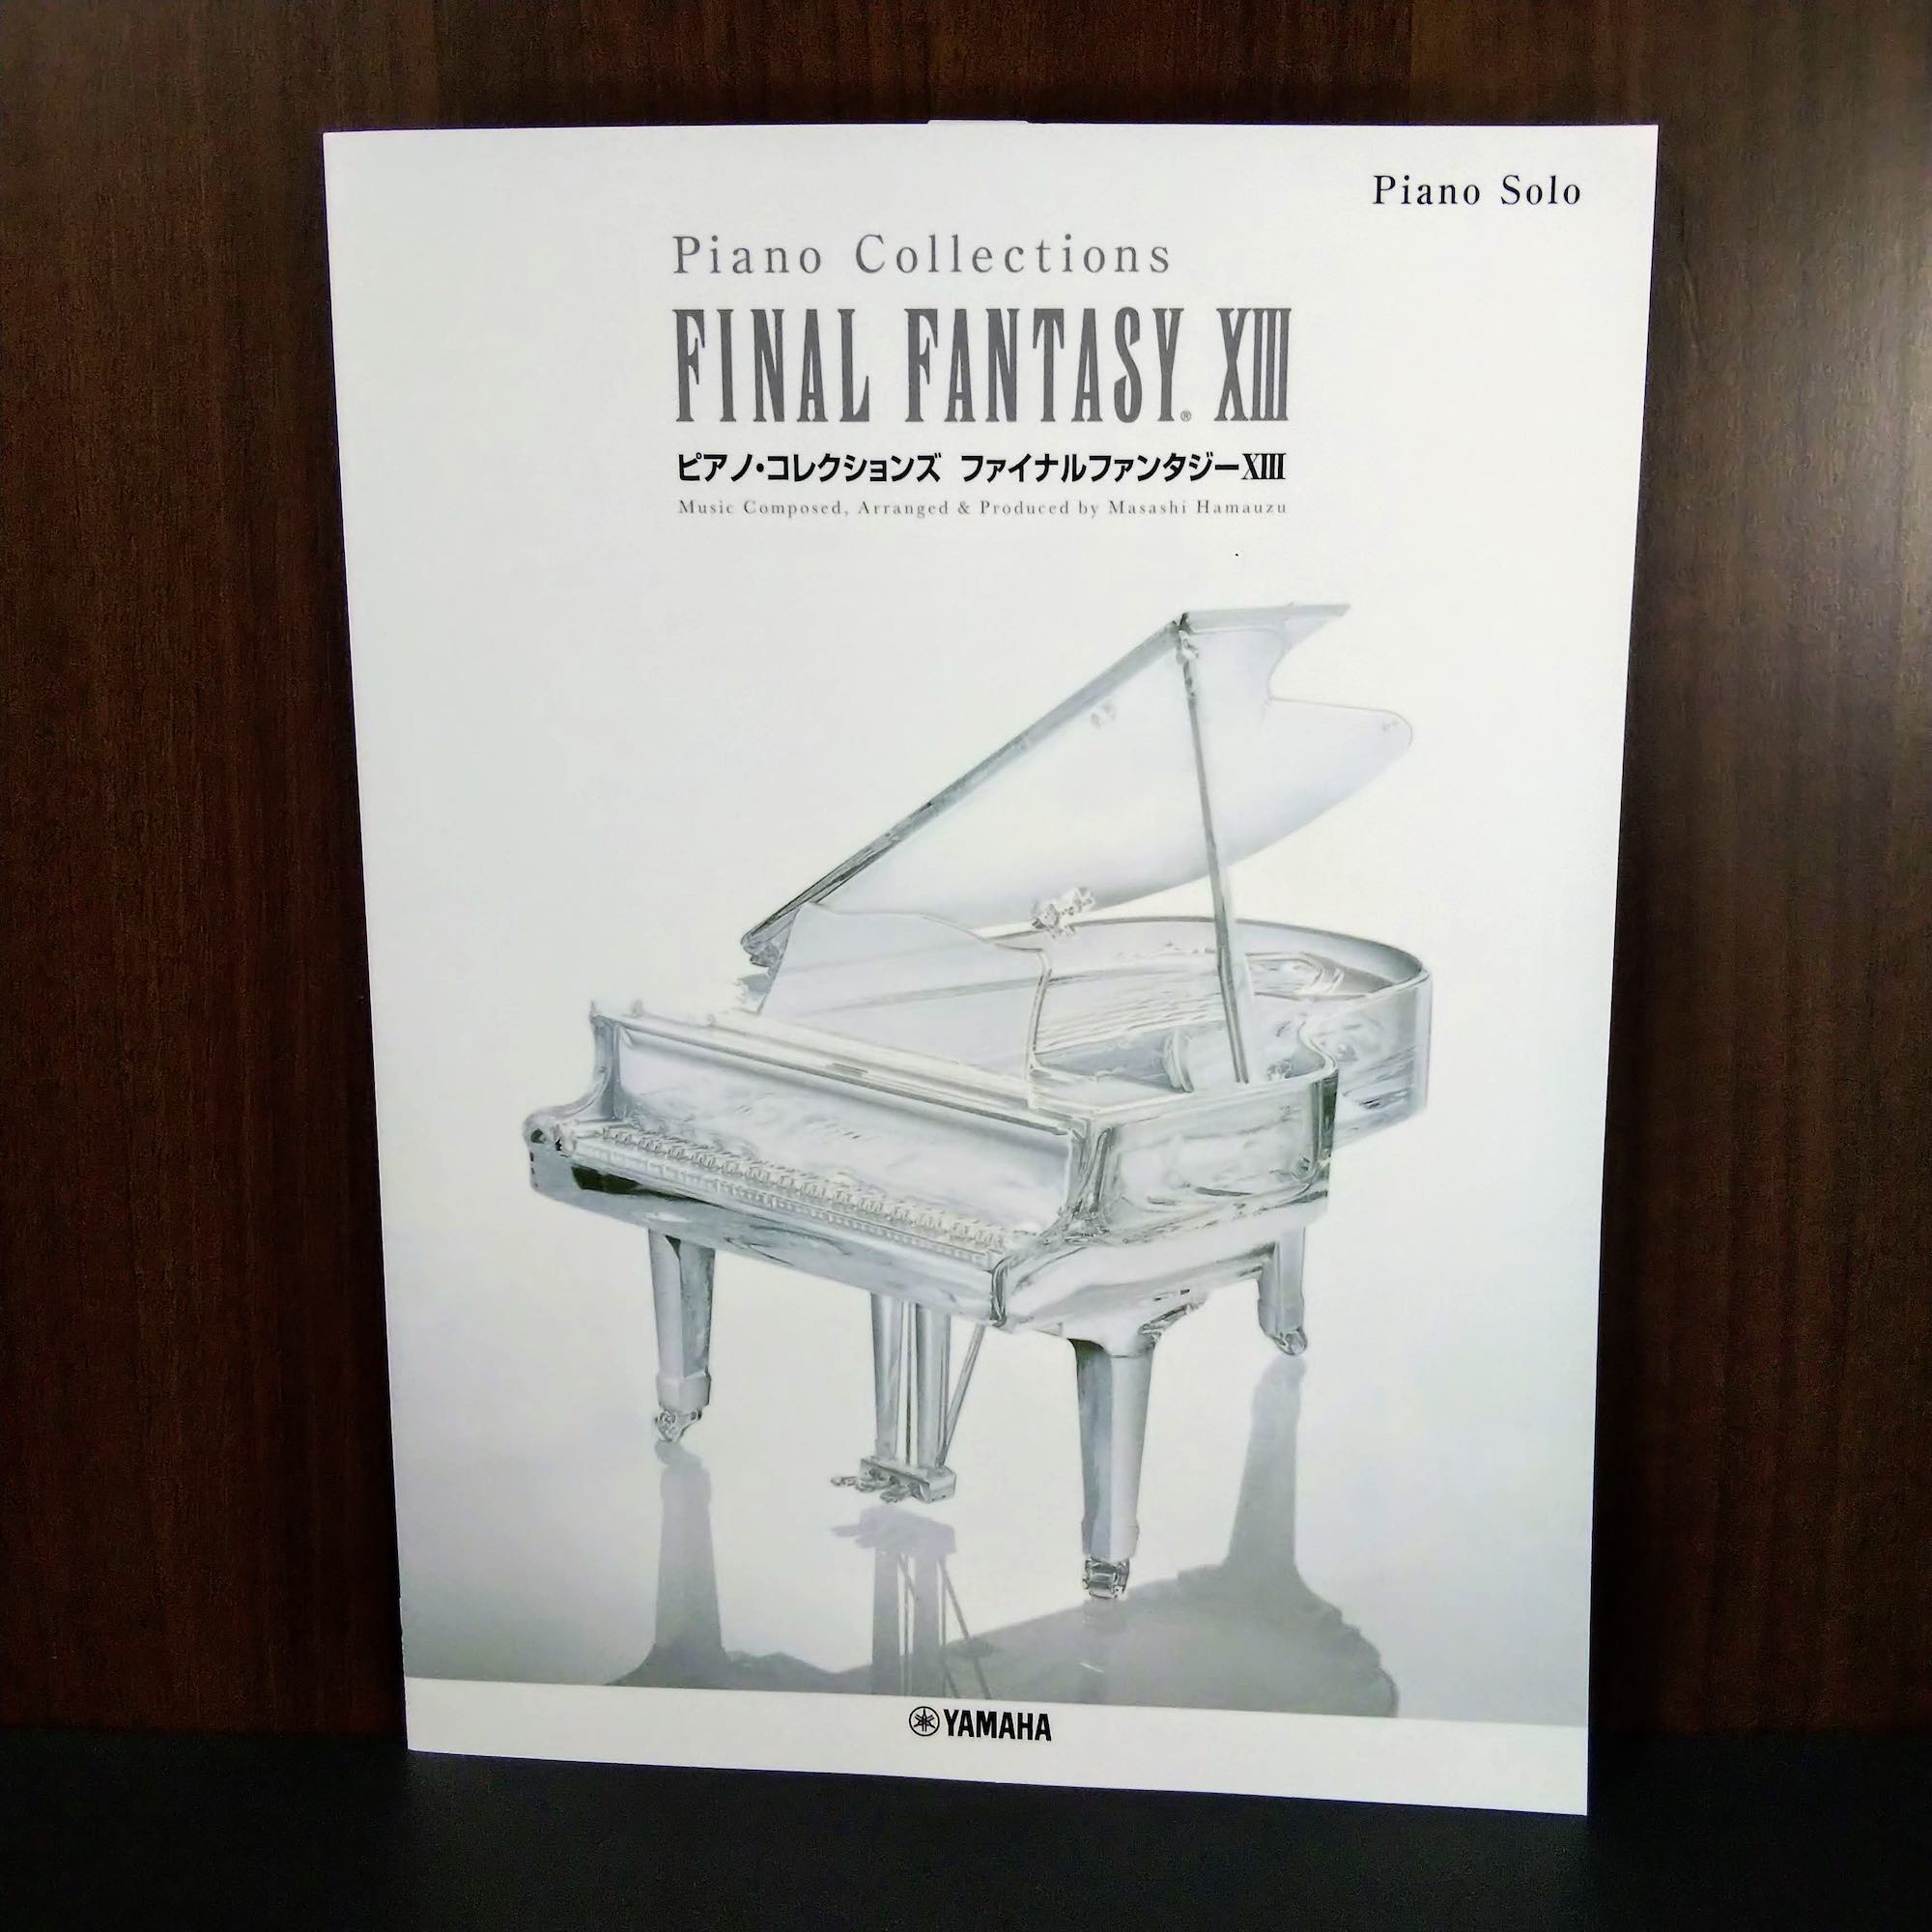 希少・初版)ファイナルファンタジー11 ピアノコレクションズ 楽譜